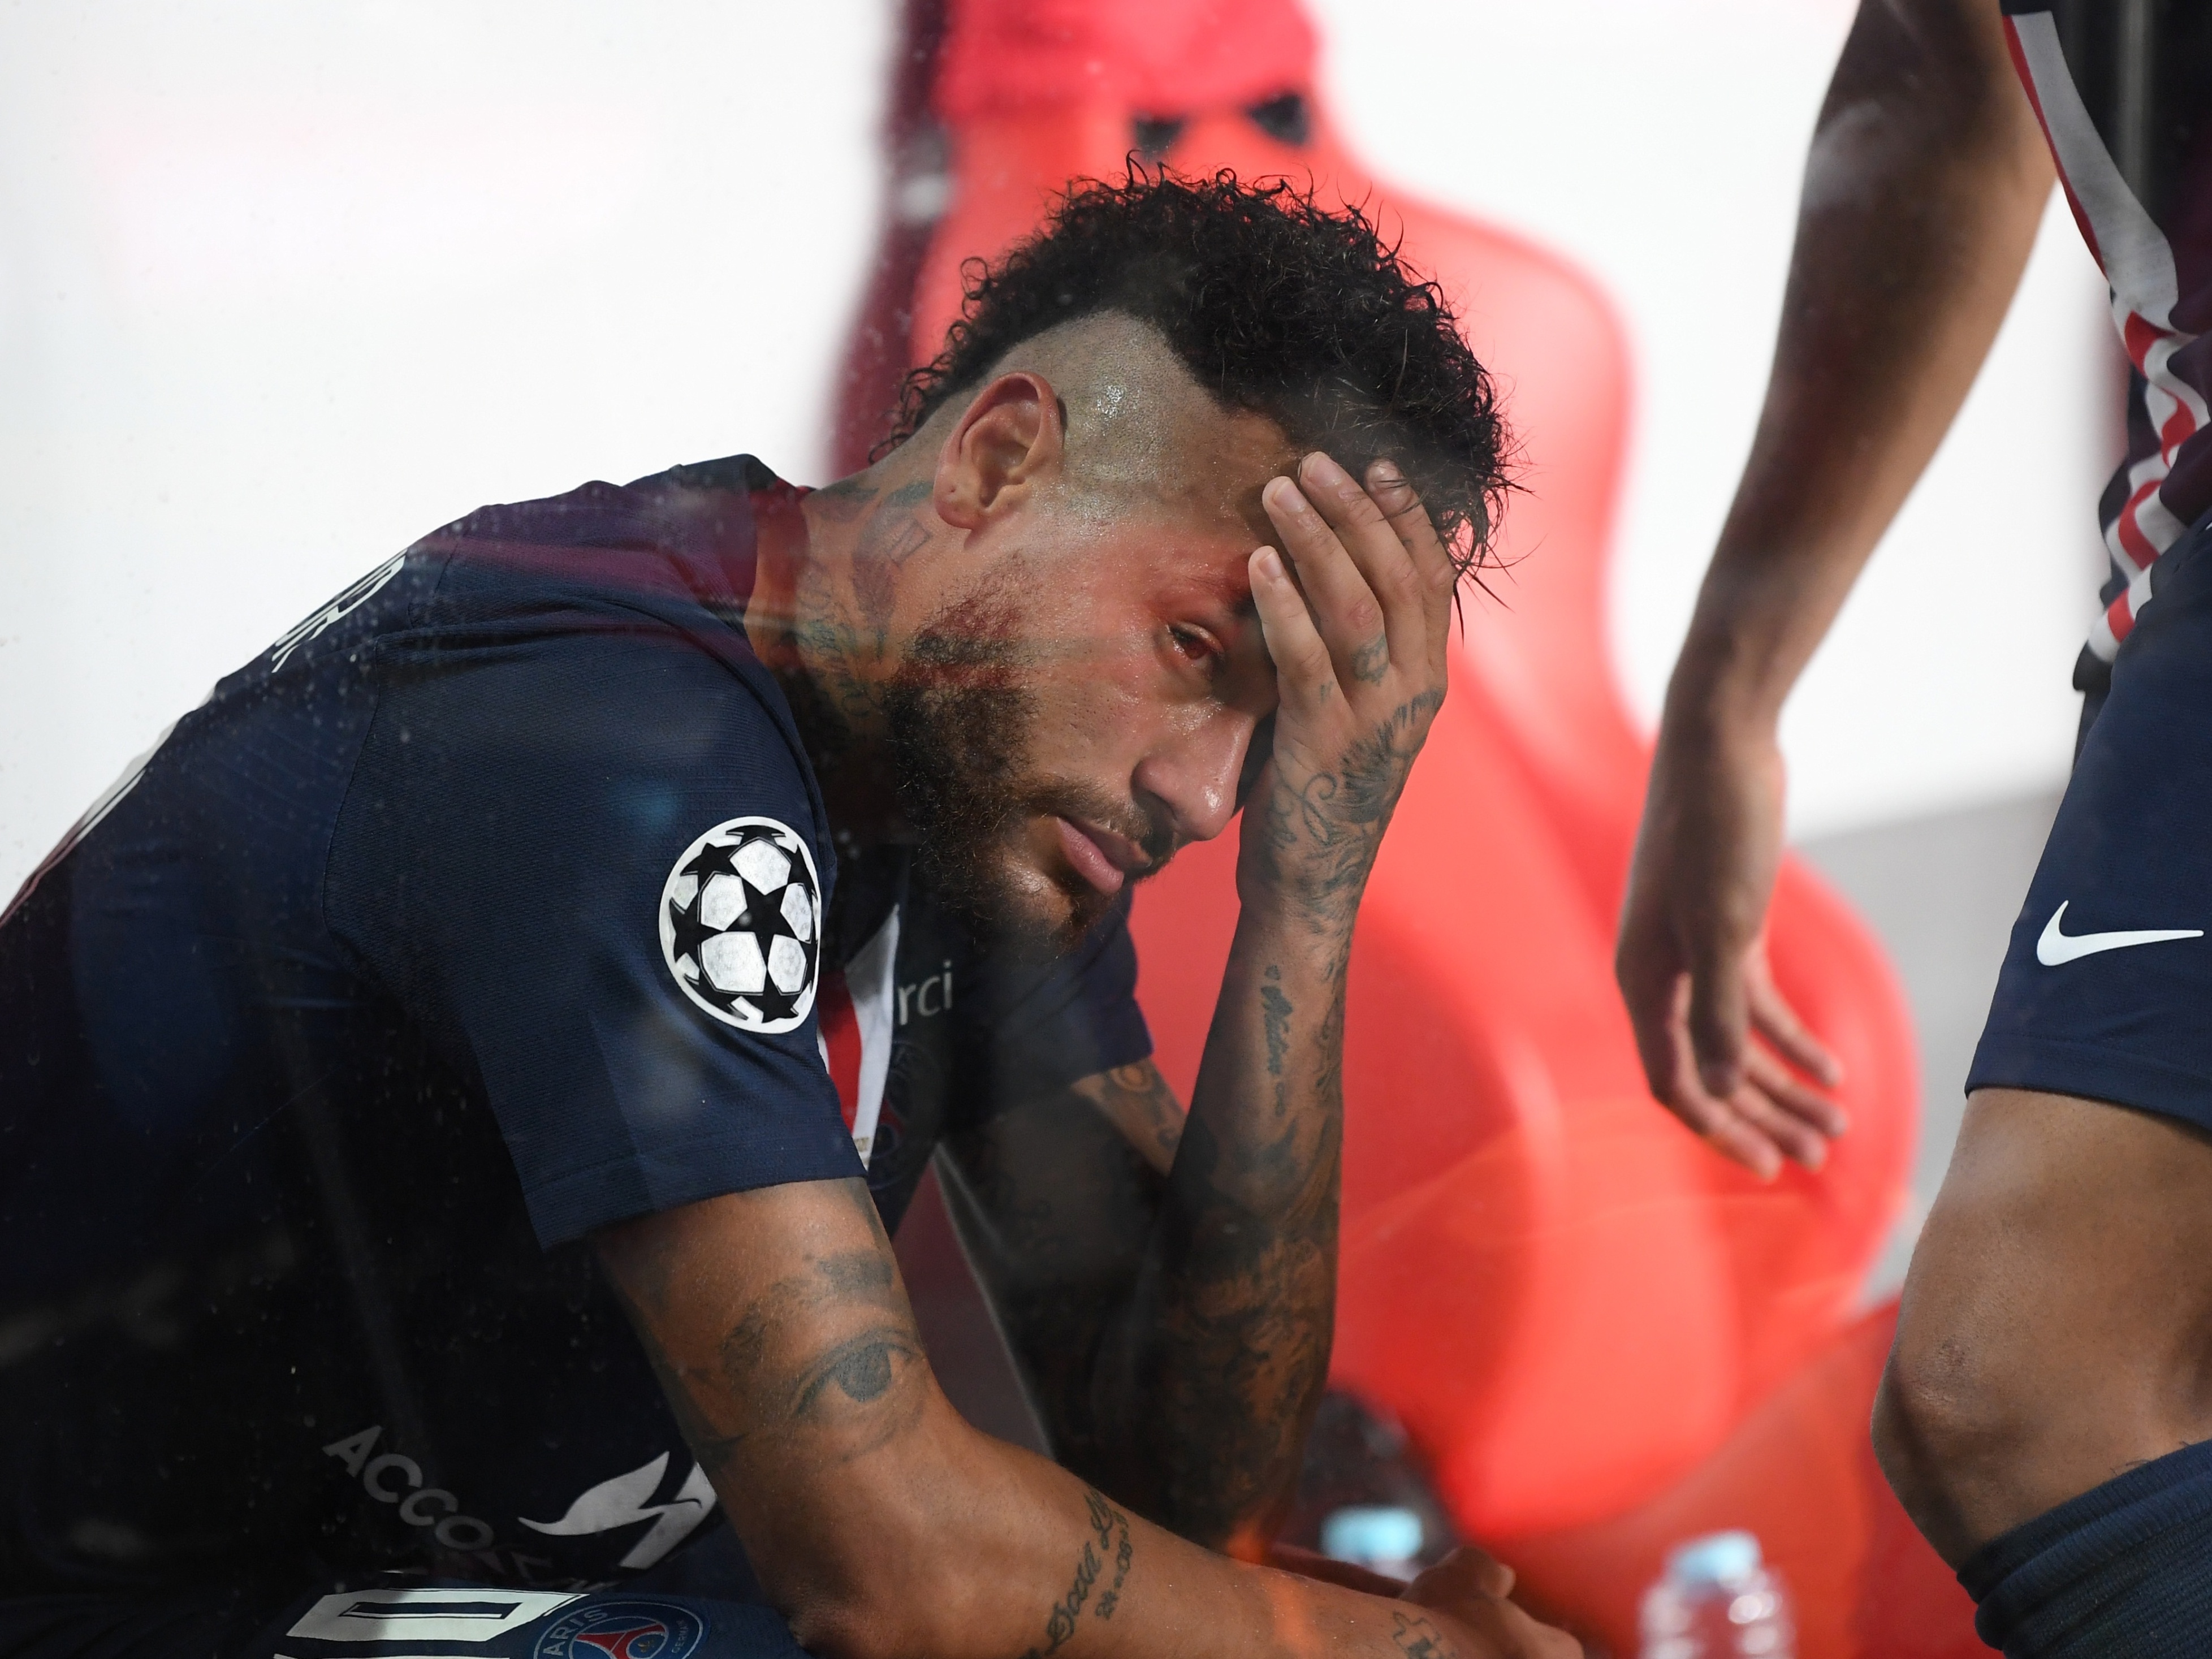 PSG sente falta de Neymar e dá adeus à Champions com nova derrota